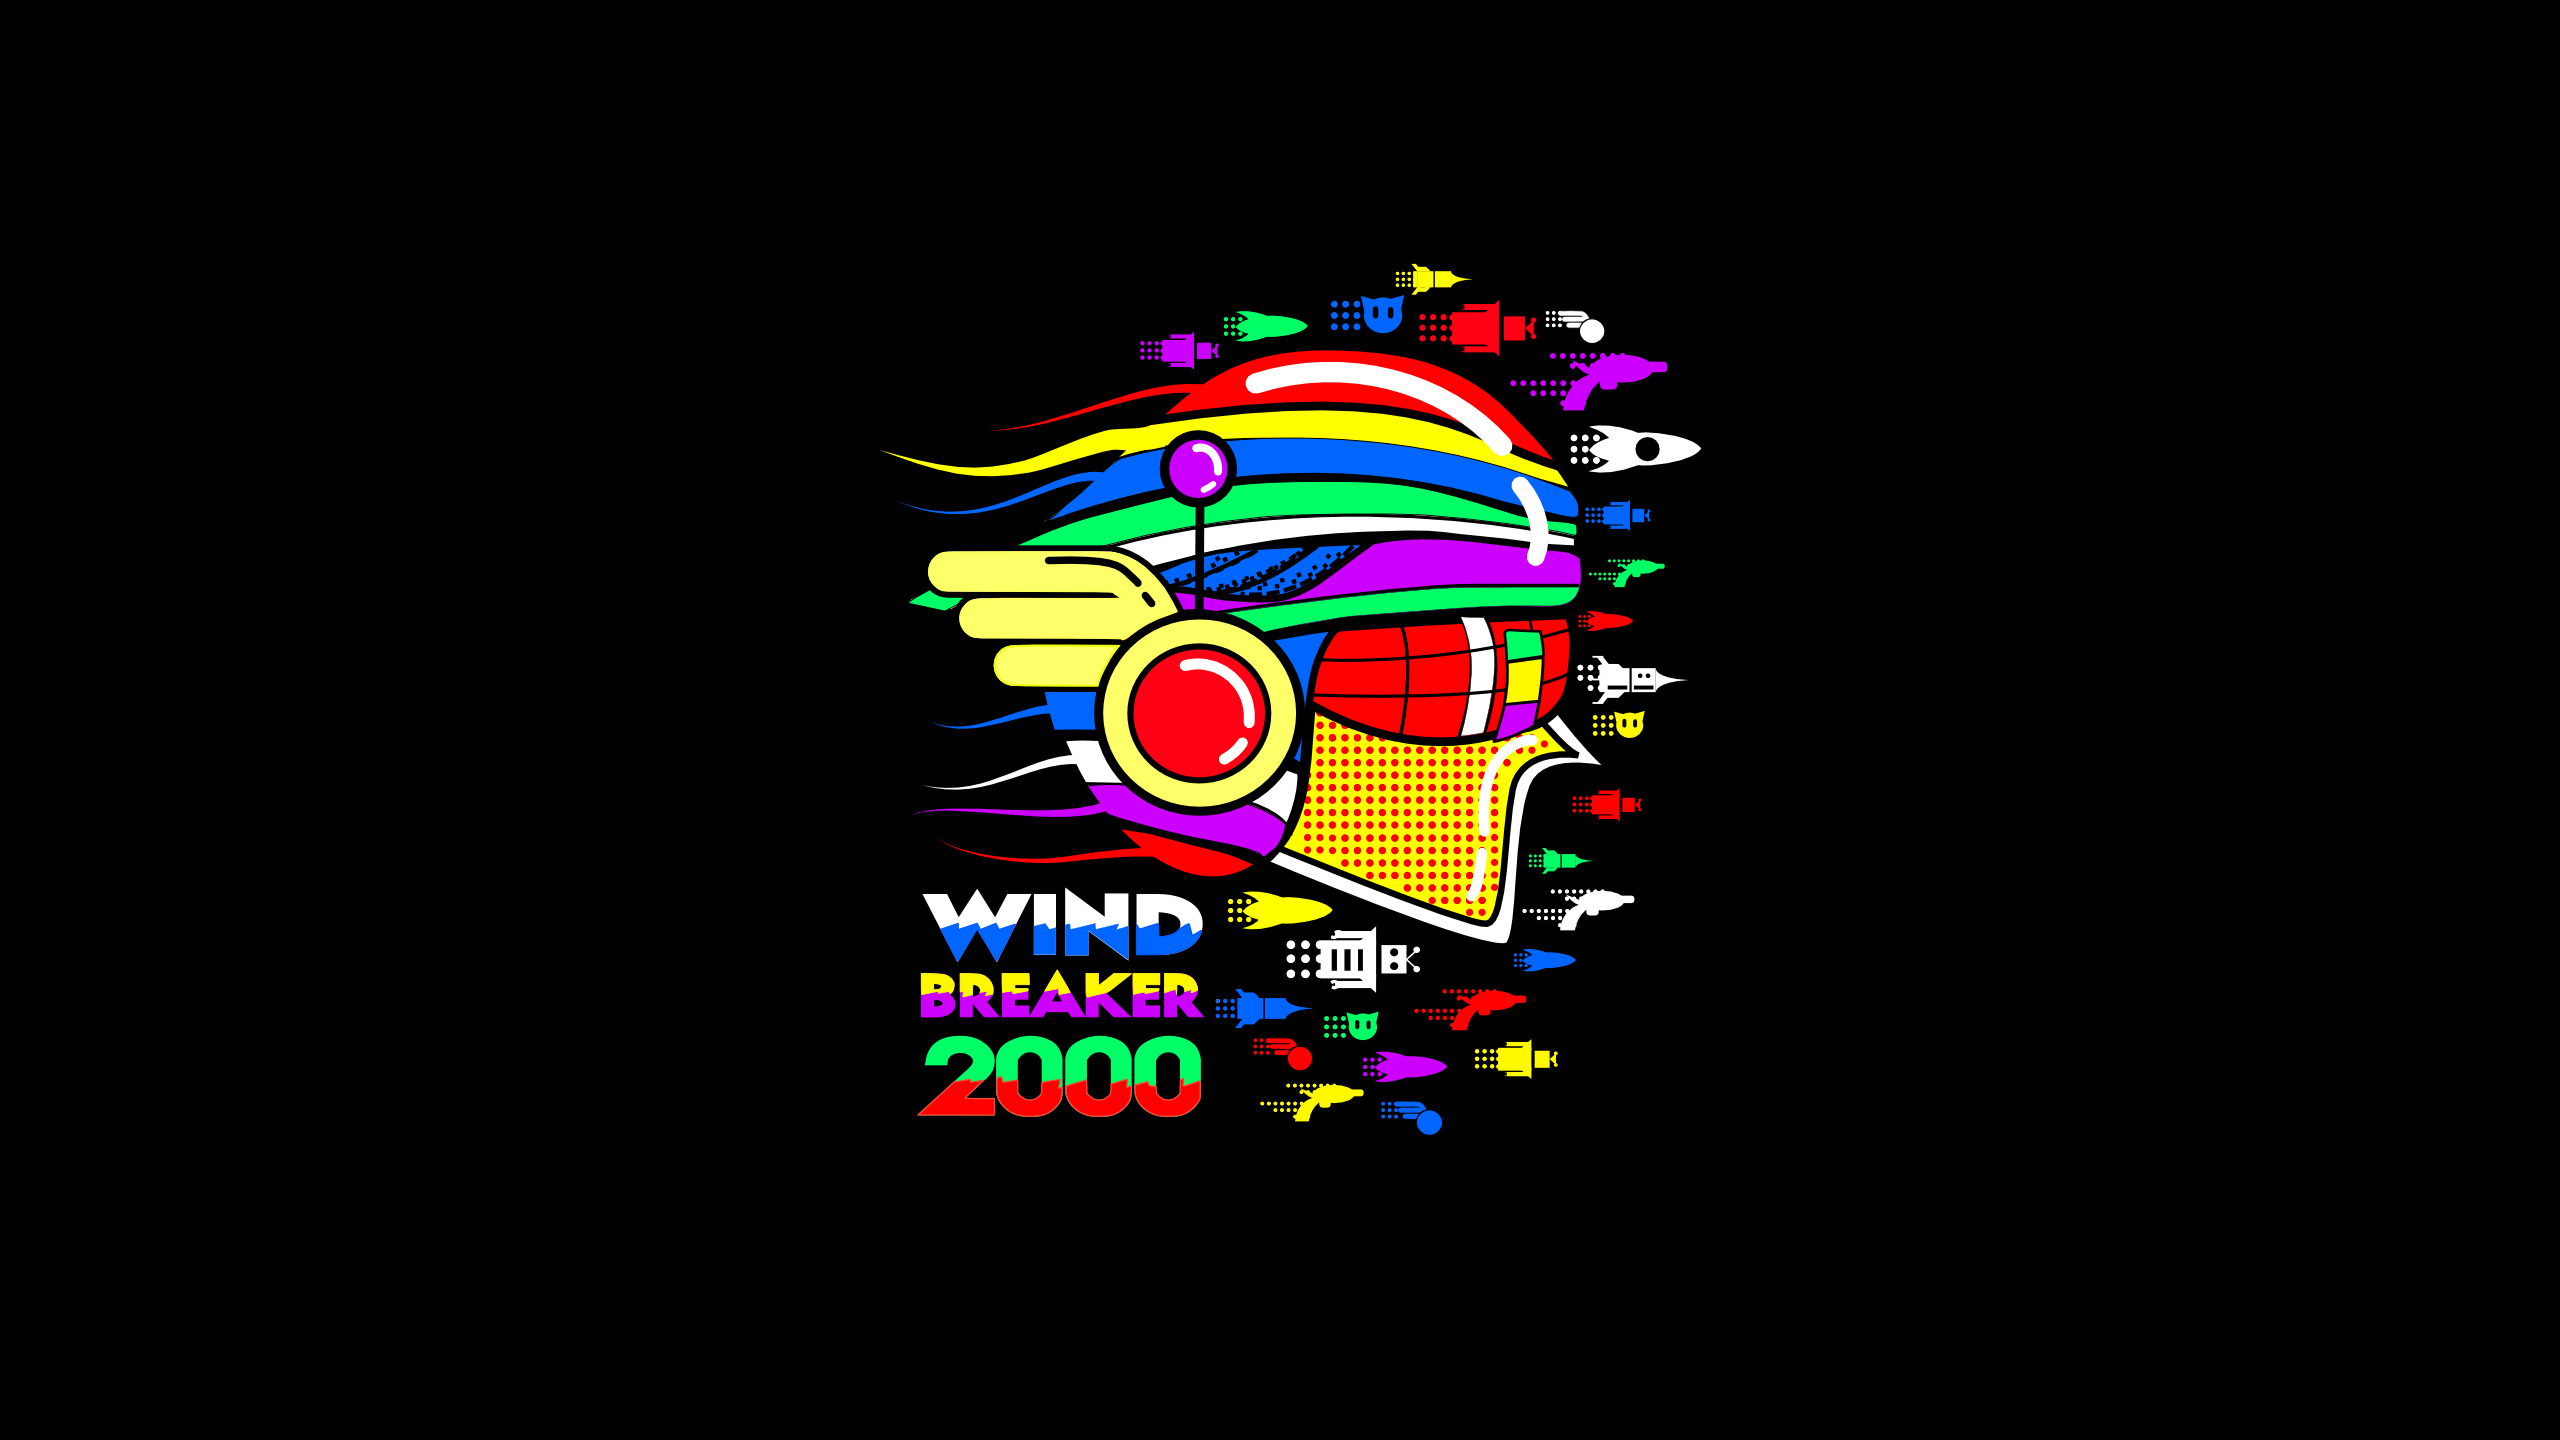 Wind Breaker 2000 by Alexander Winifred  dsktps